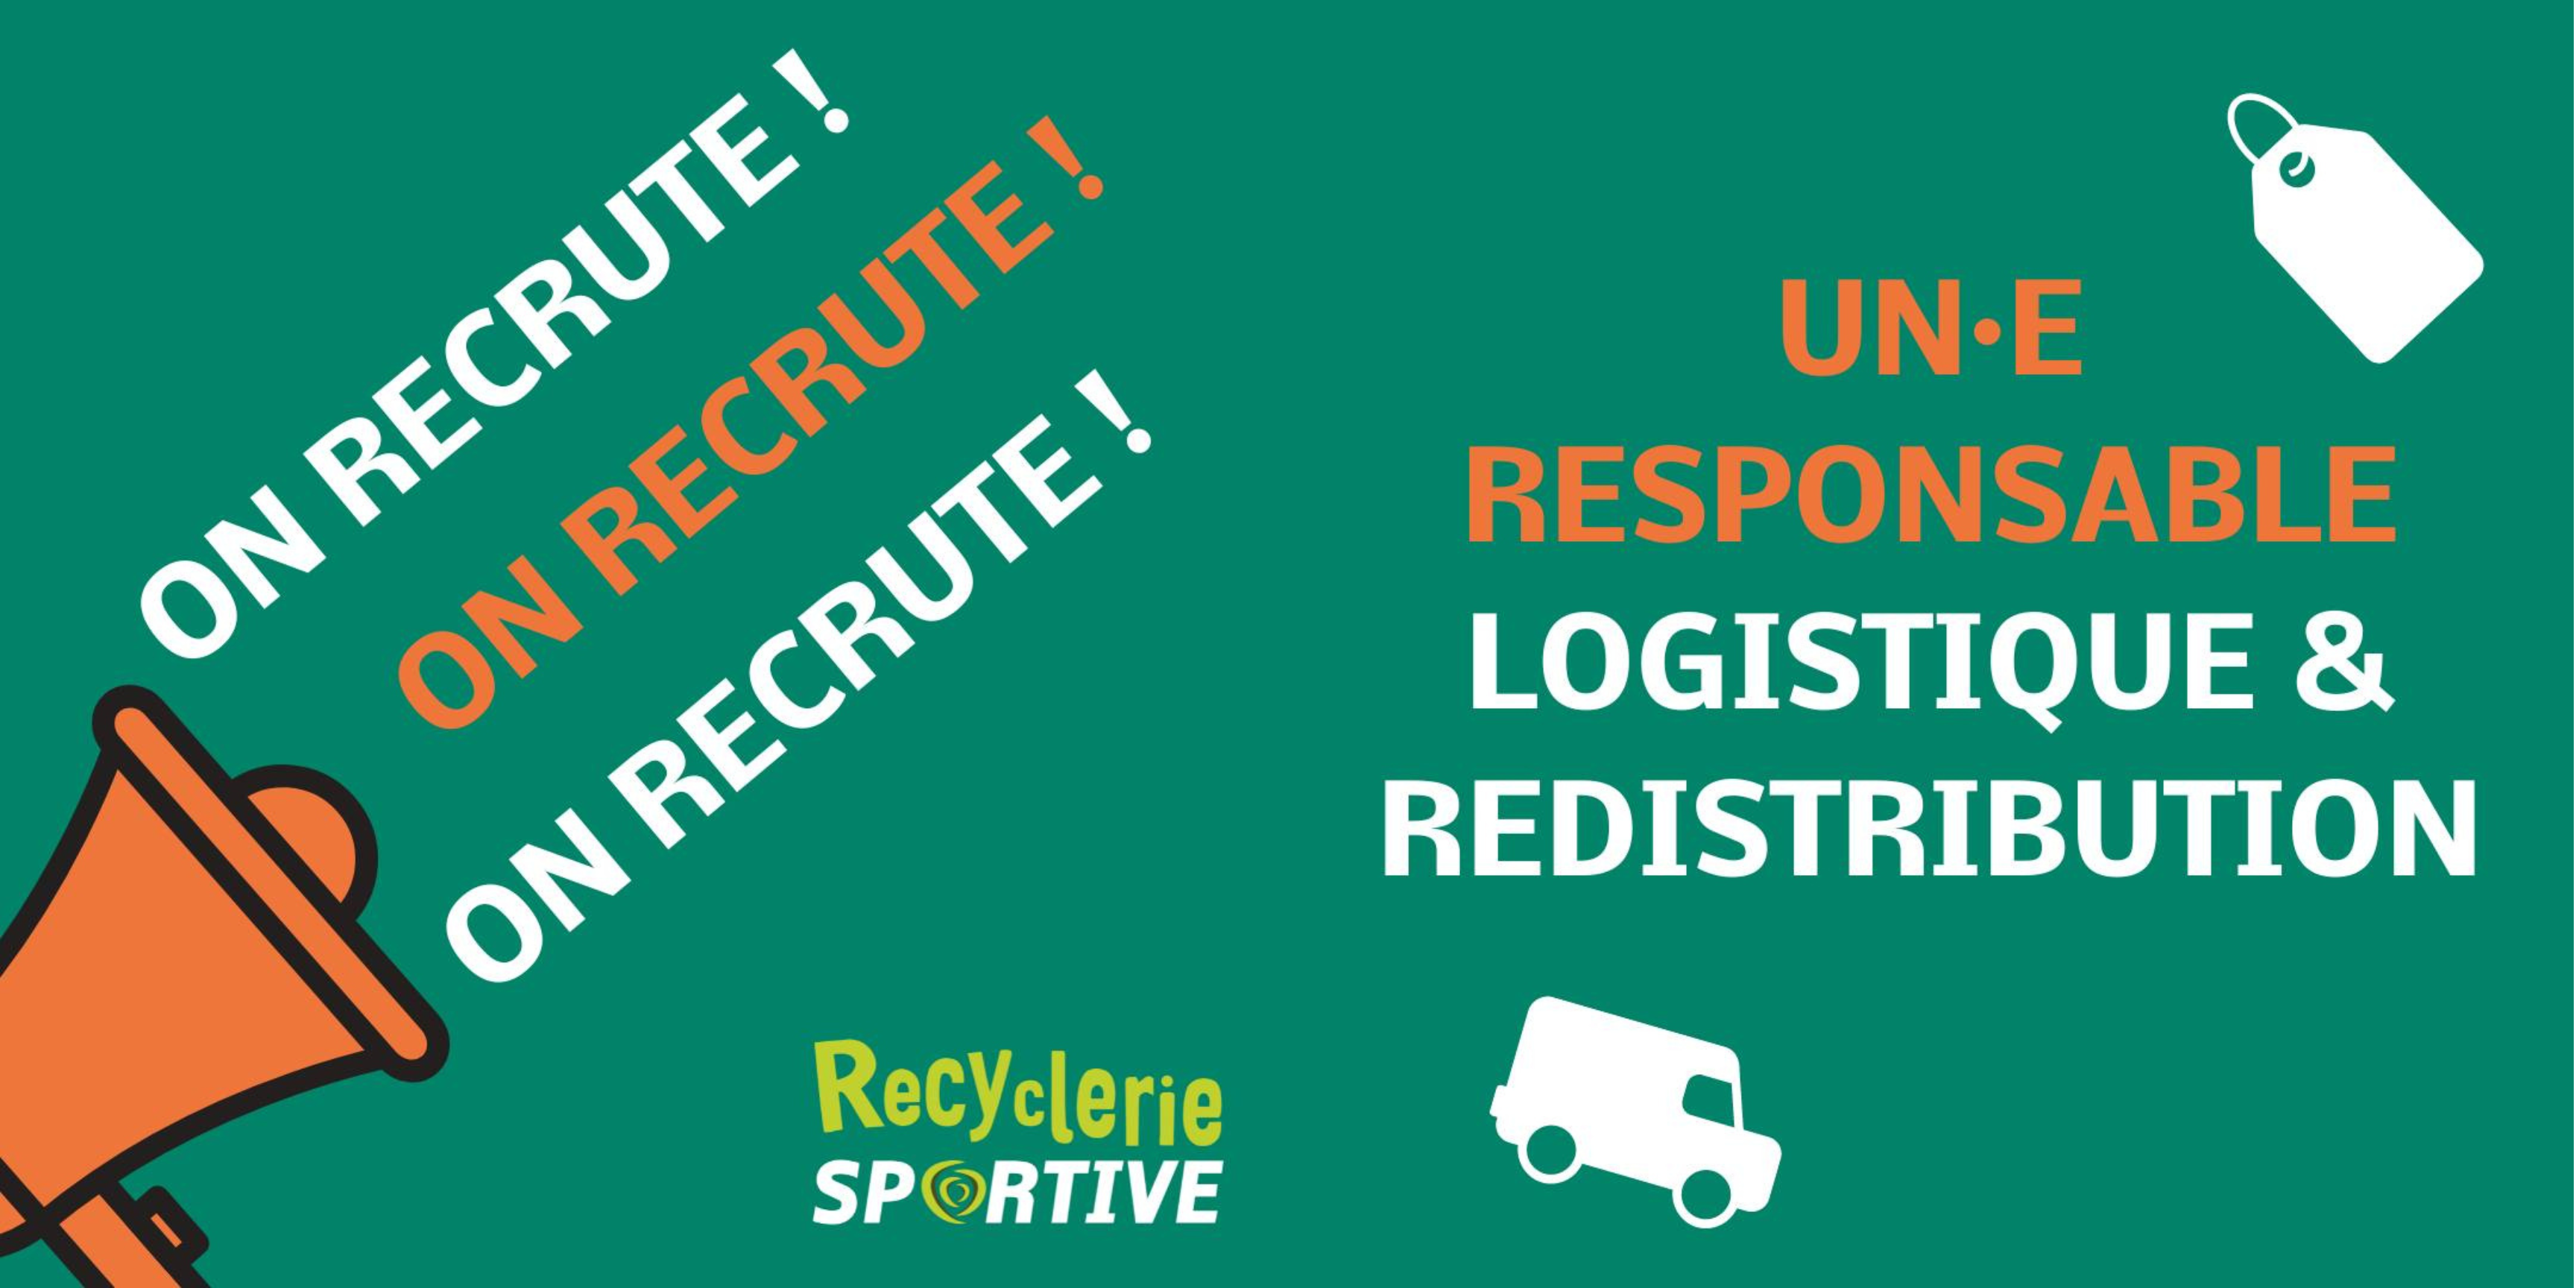 Offre d’emploi : Responsable Logistique & Redistribution